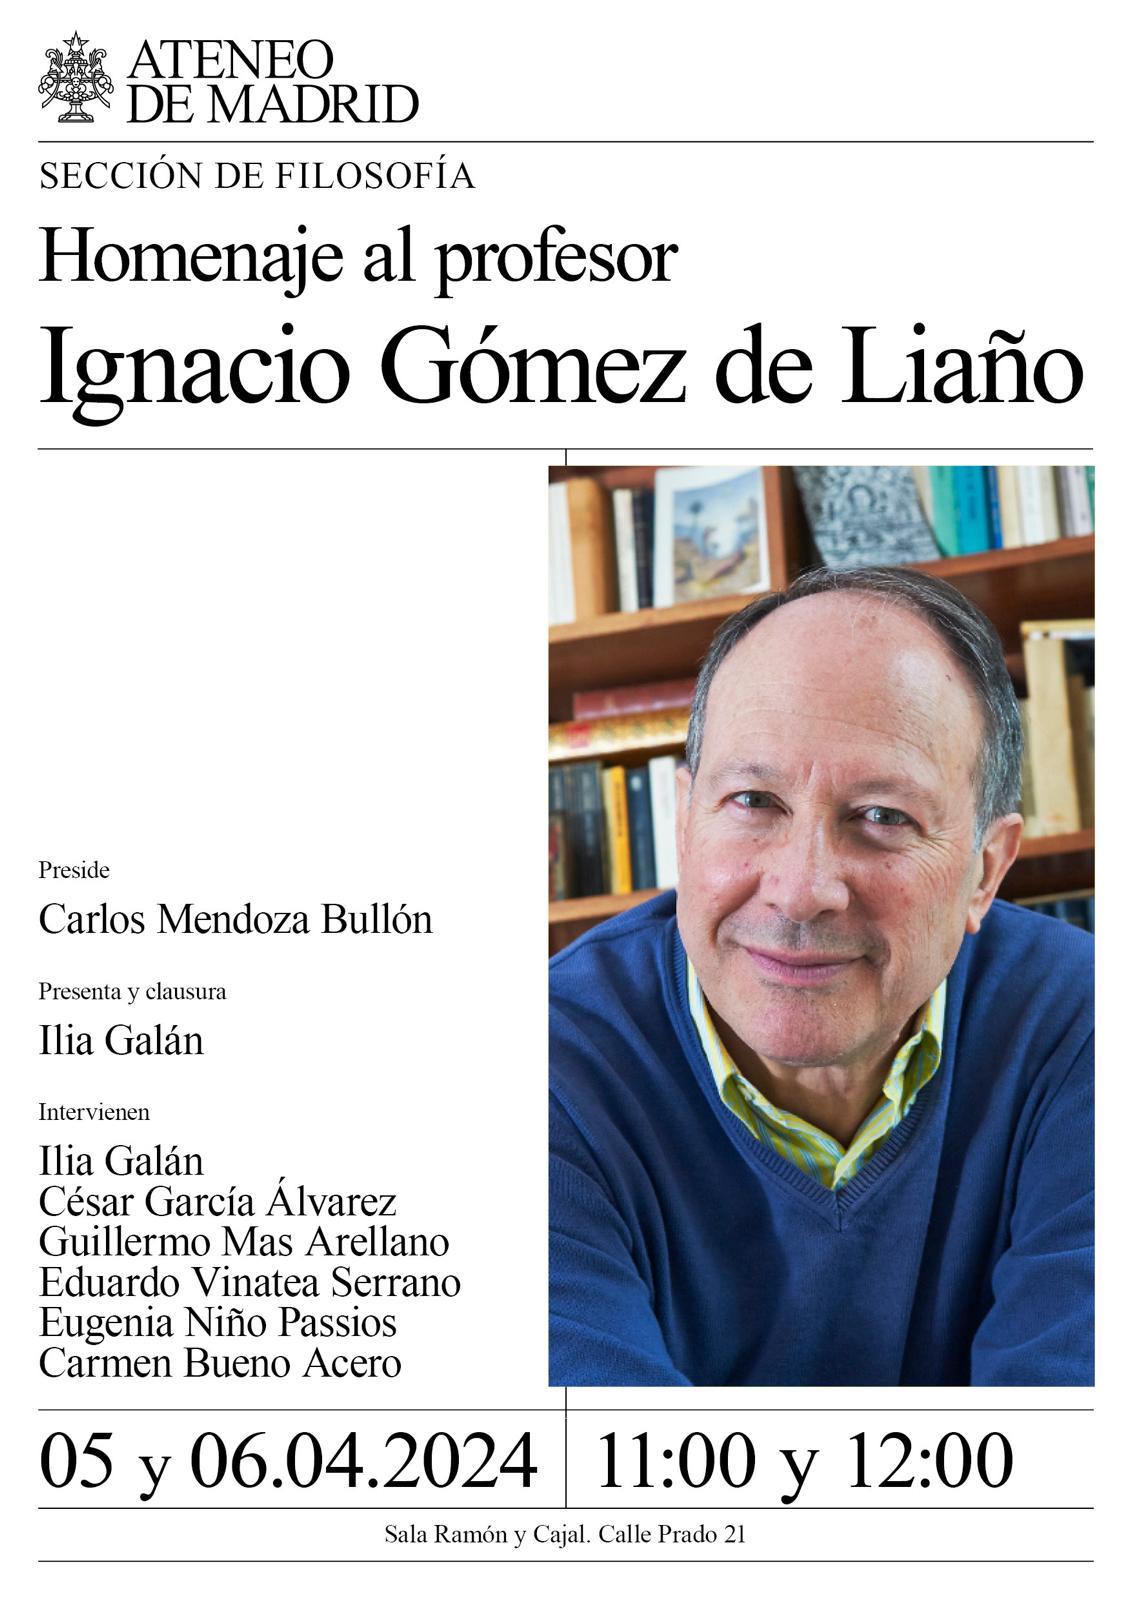 Homenaje a Ignacio Gómez de Liaño en el Ateneo de Madrid. 5 у 6 de abril